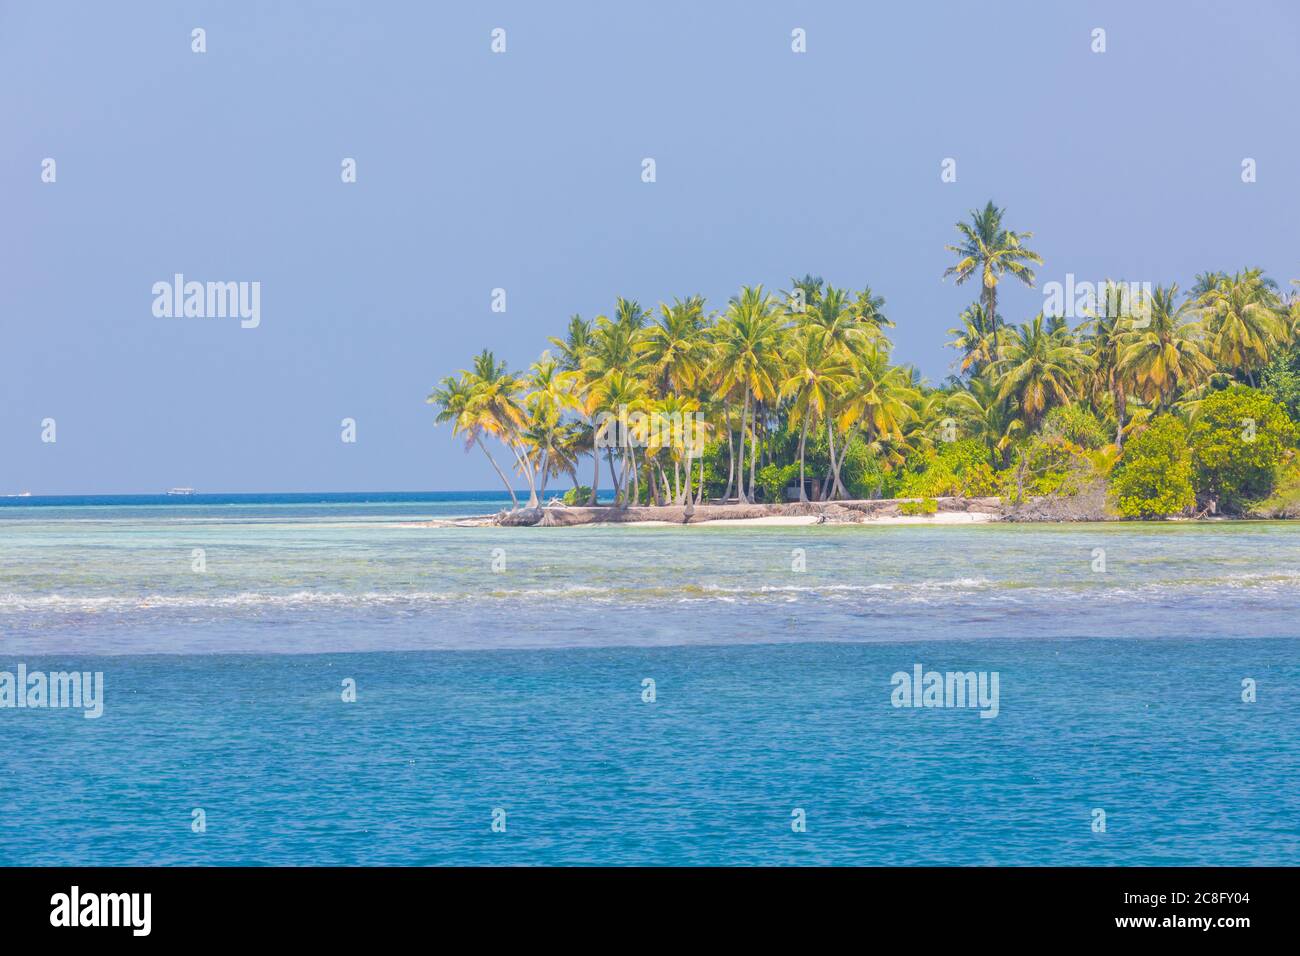 Spiaggia esotica su un'isola tropicale tra palme, laguna mare con barriera corallina. Splendido paesaggio sulla spiaggia, spazio per le copie, destinazione paradisiaca Foto Stock